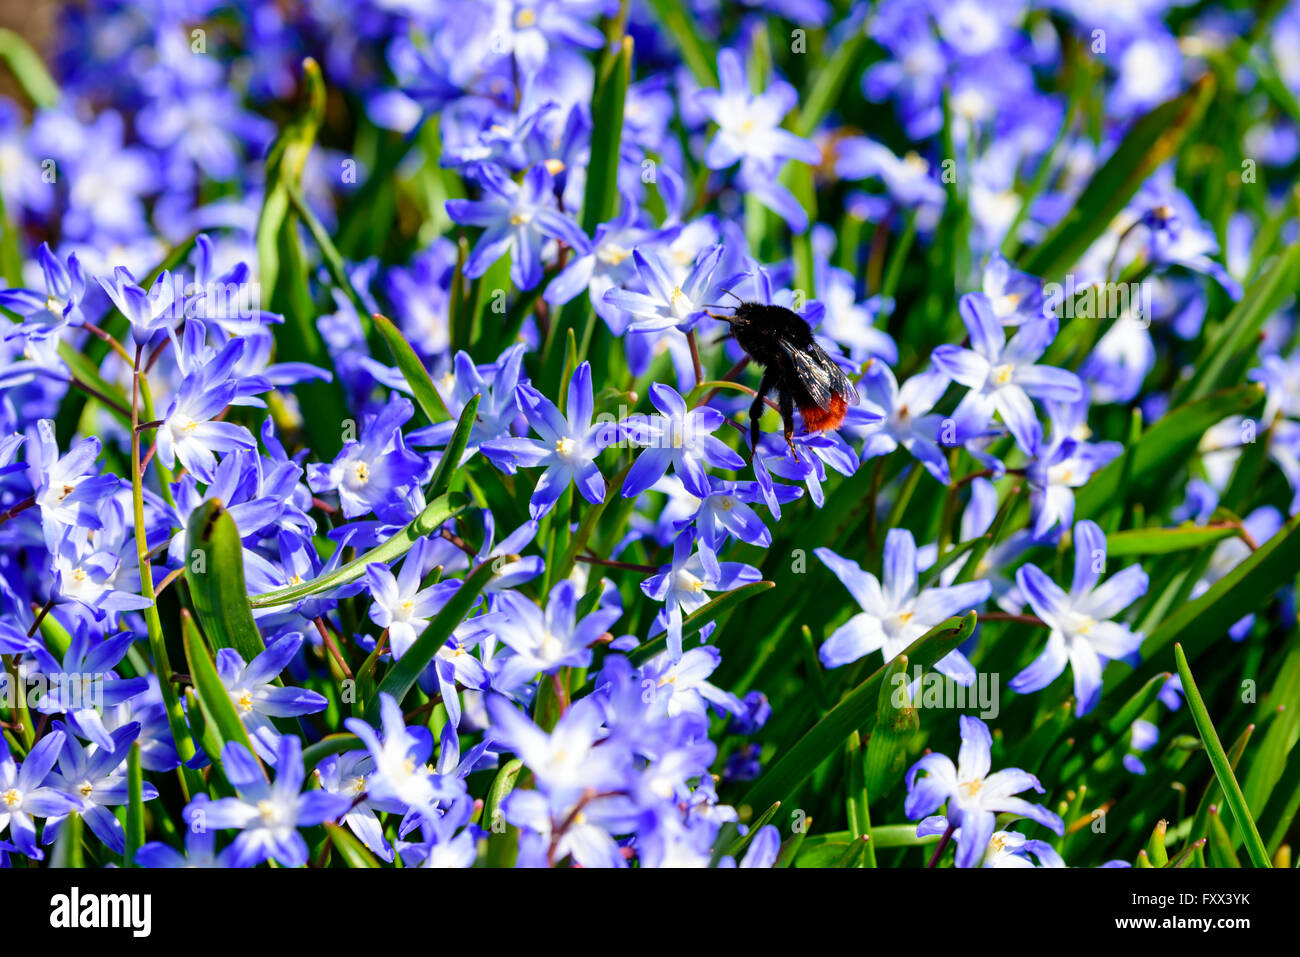 Bombus lapidaires, le red-tailed bumblebee, ici se nourrir sur certains scilla bleu au début du printemps. Banque D'Images